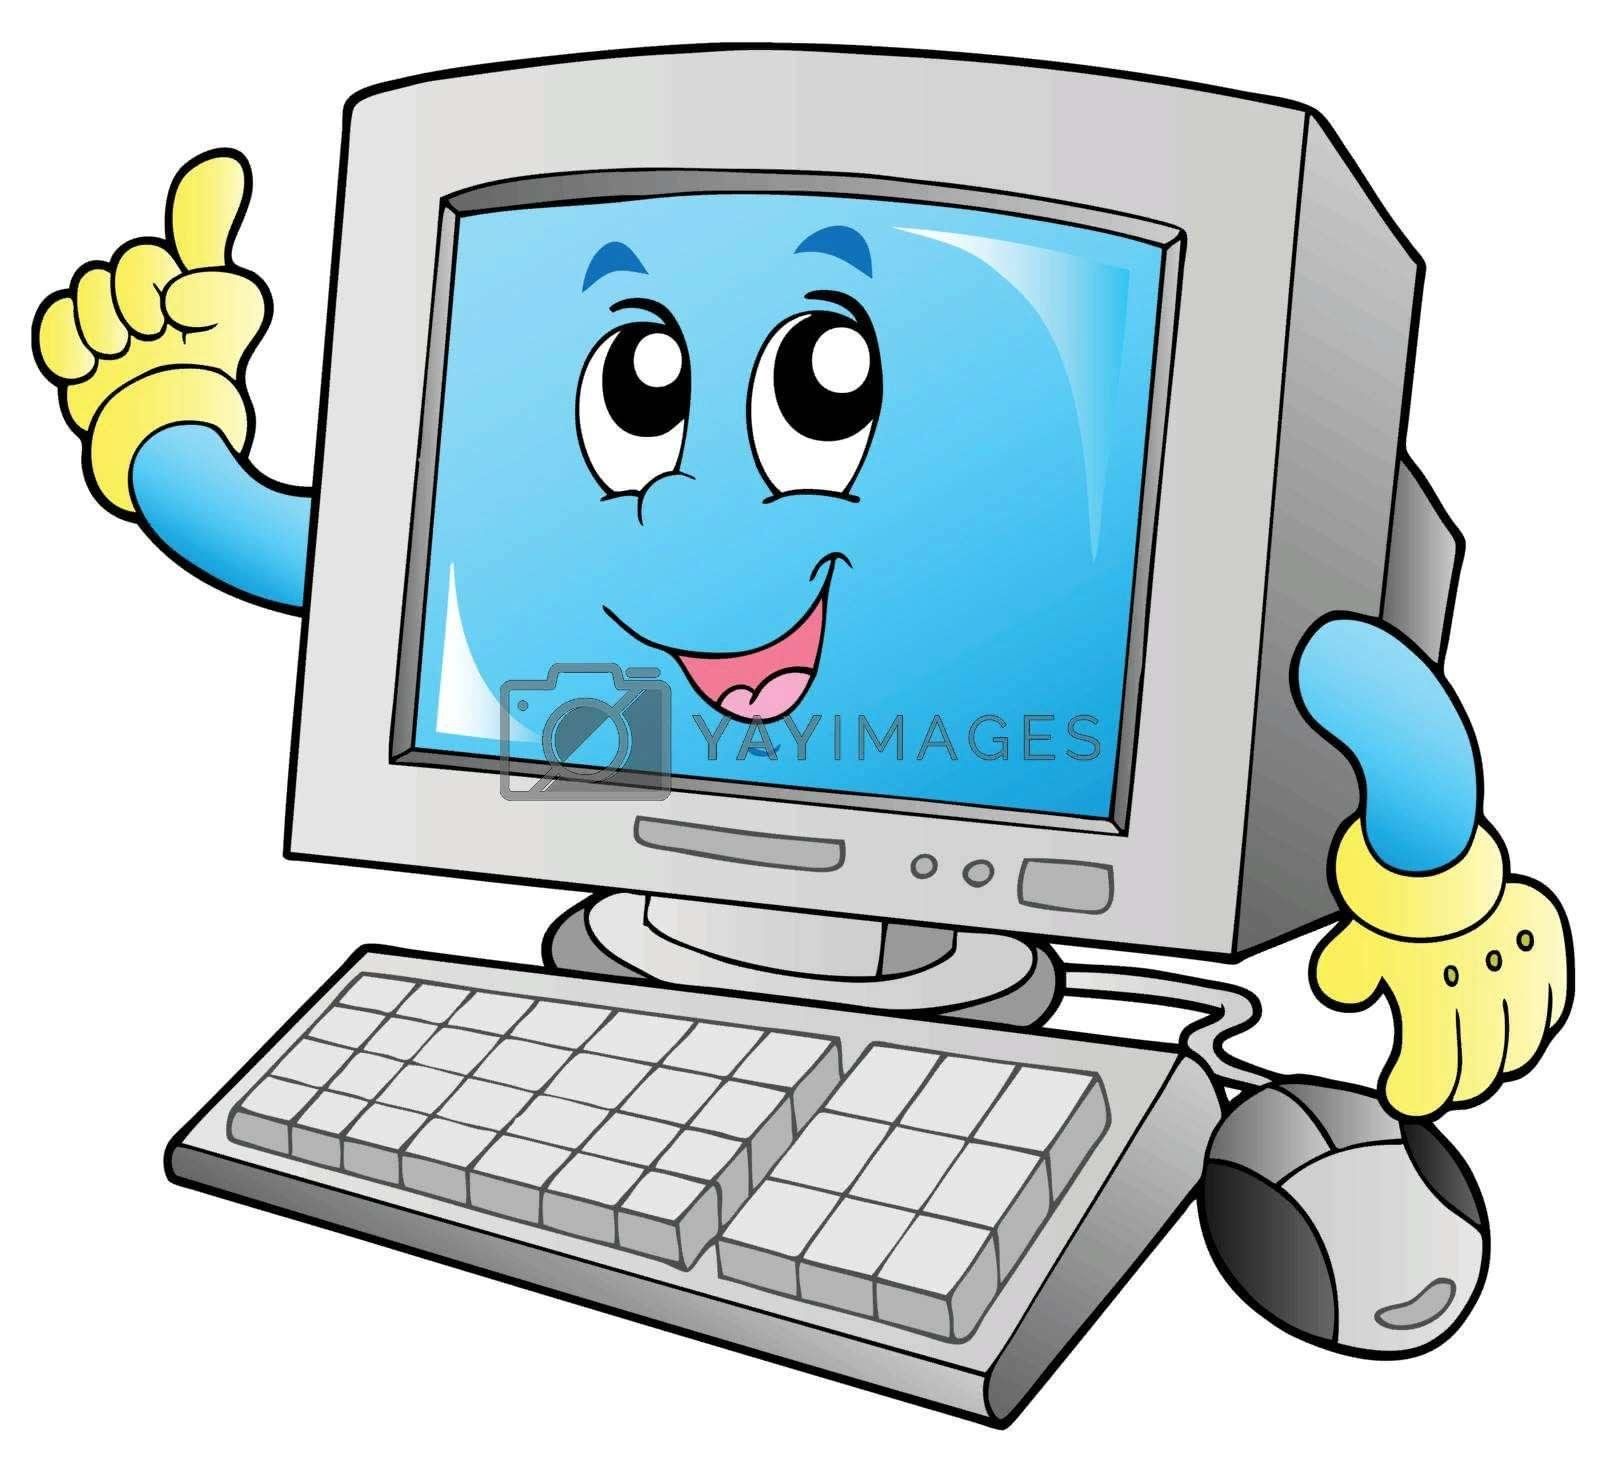 Смешная картинка компьютера. Компьютер на прозрачном фоне. Компьютер мультяшный. Компьютер без фона. Компьютерная грамотность.